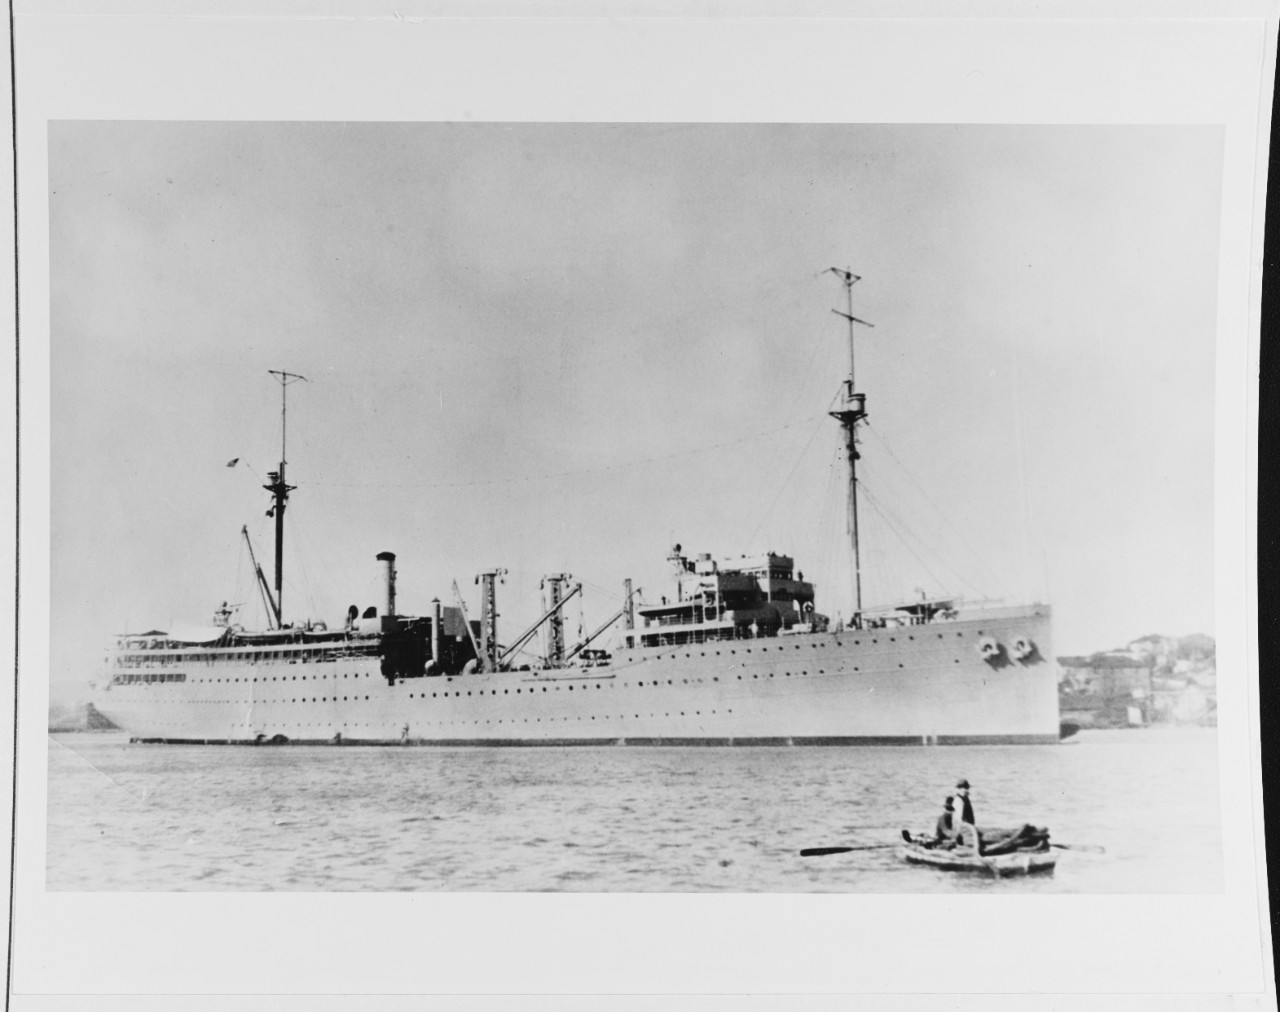 USS MEDUSA (AR-1)